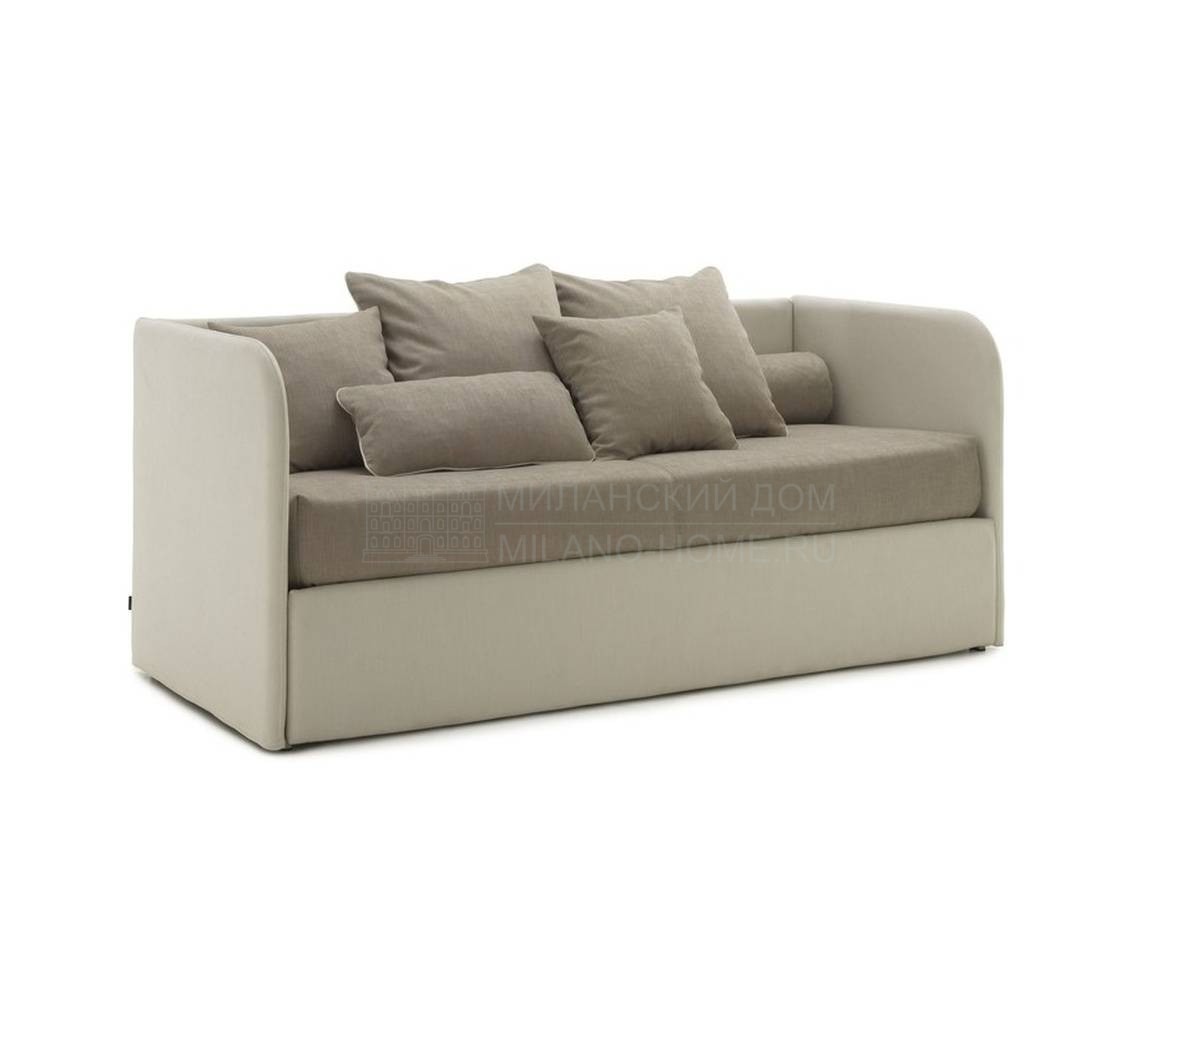 Прямой диван Line Sofa из Италии фабрики BOLZAN